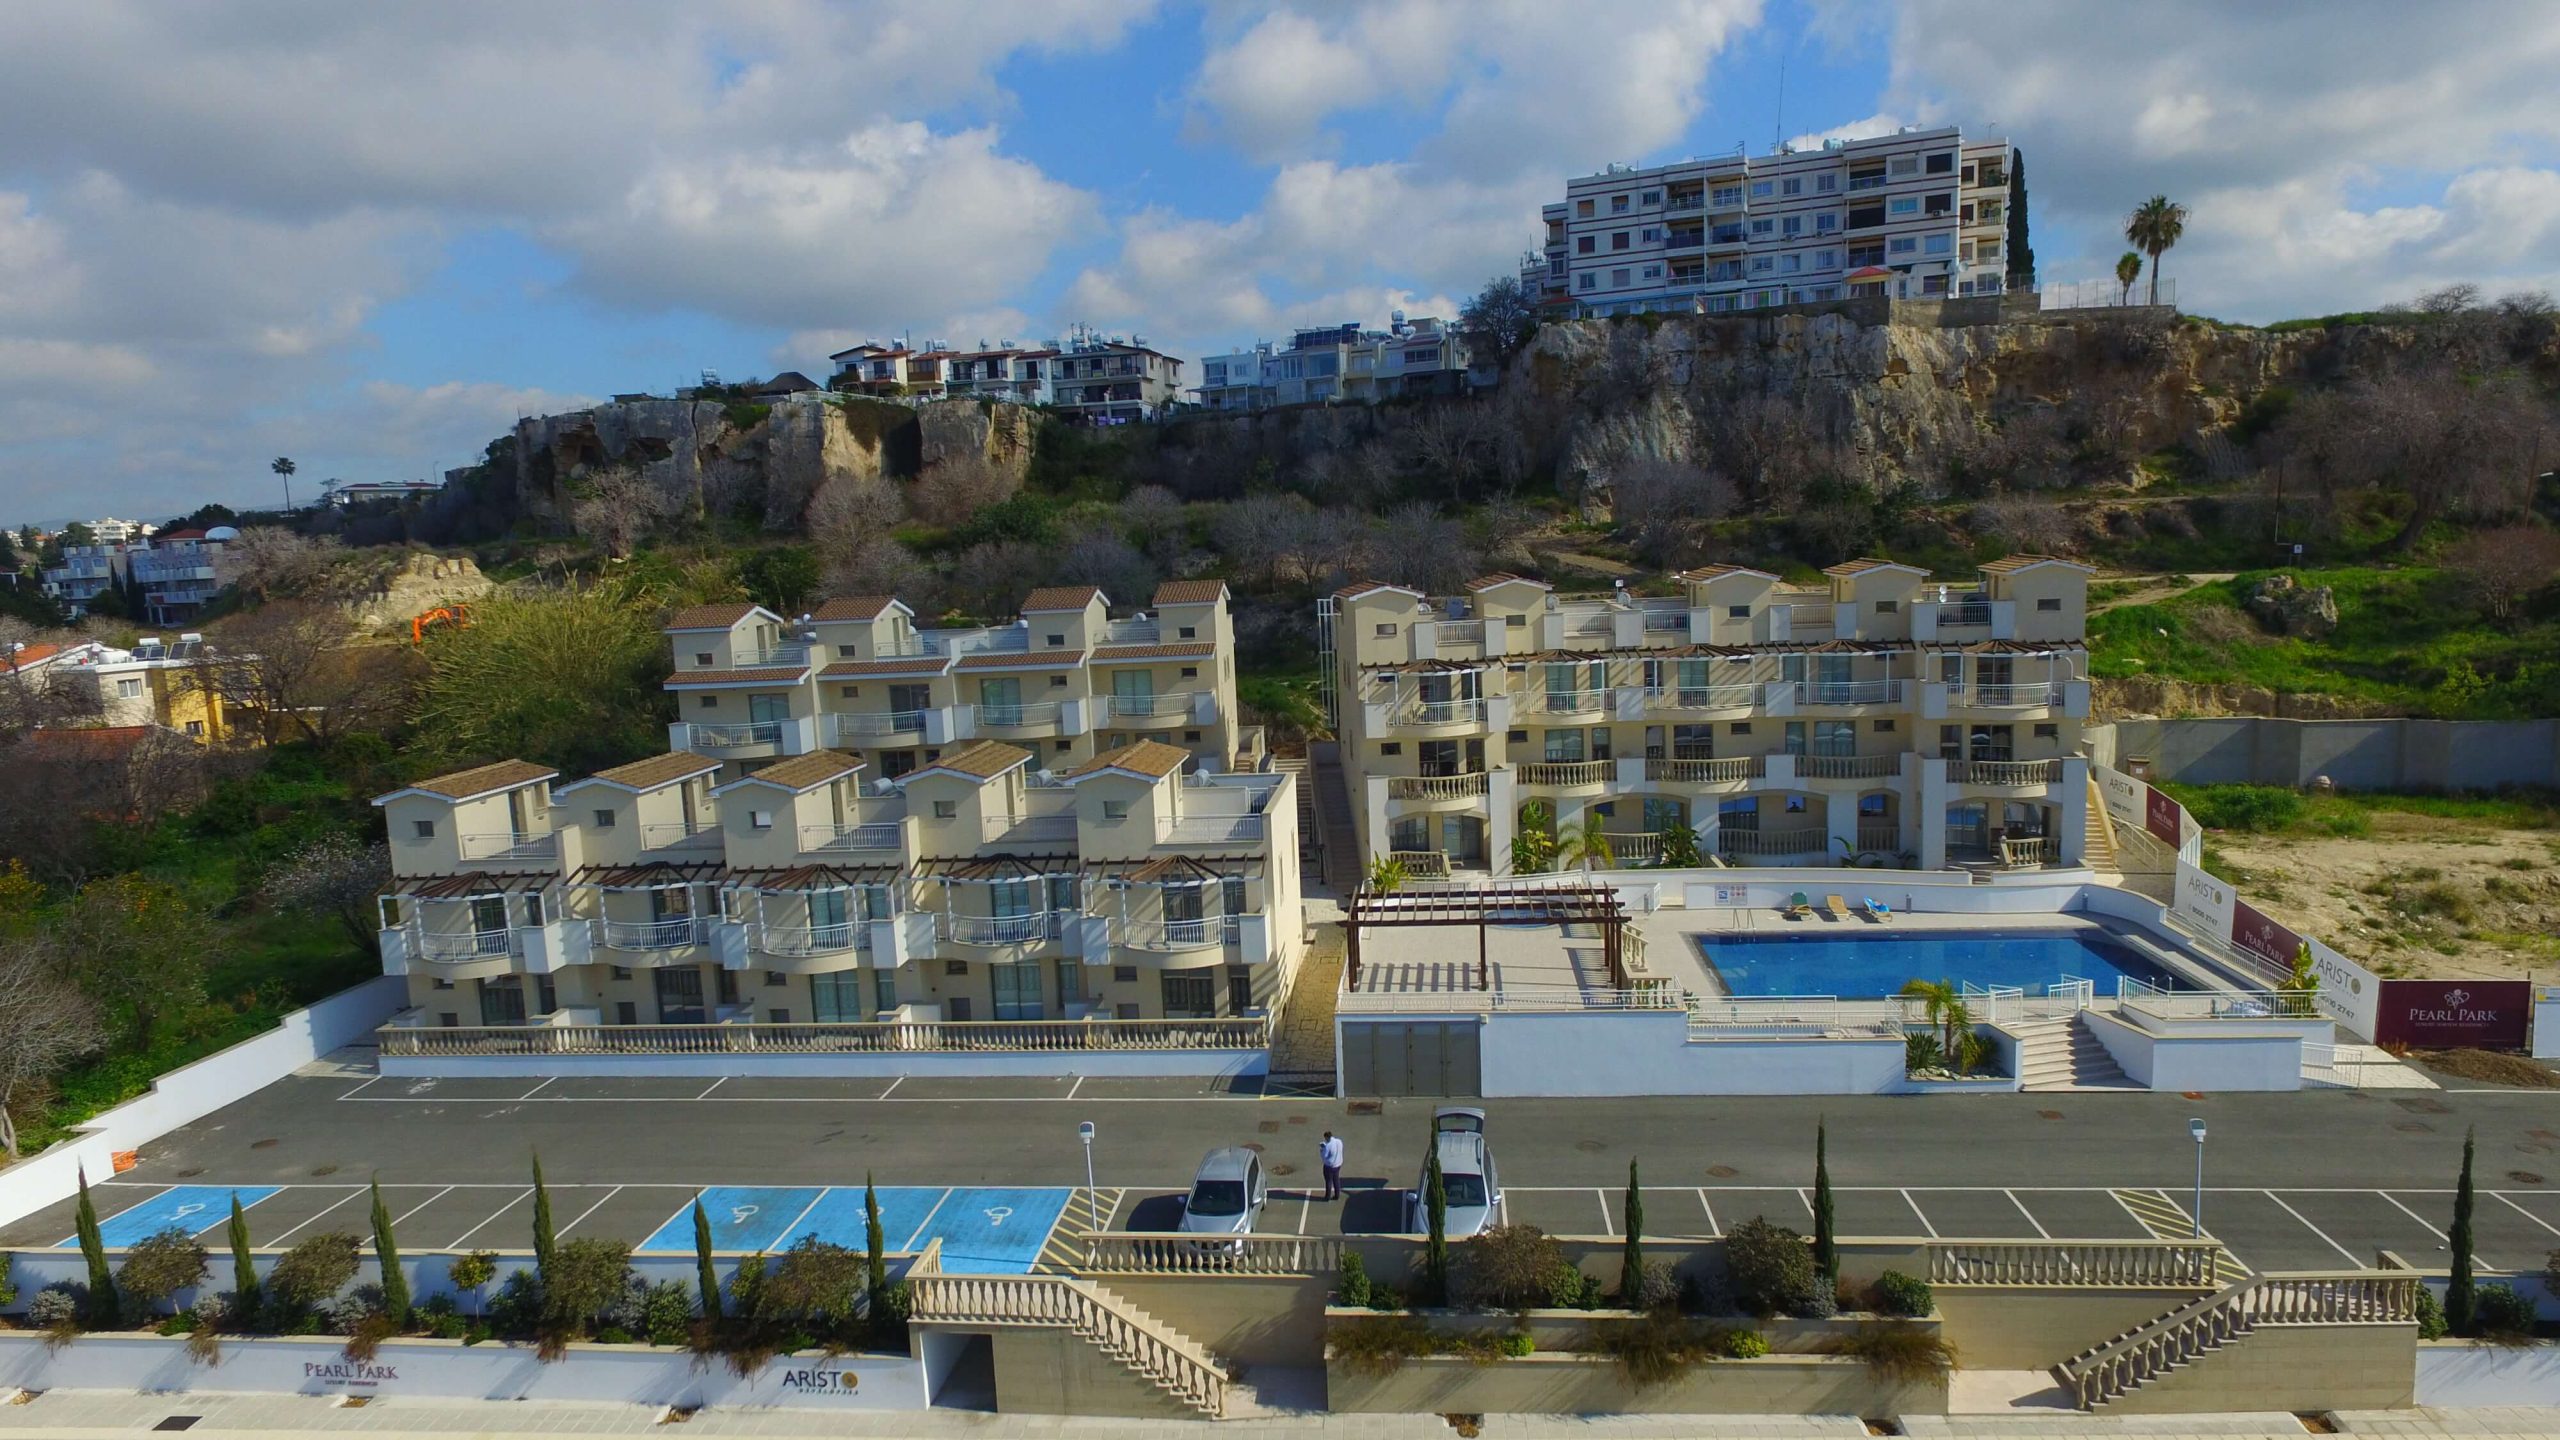 Pearl Park reside apartamentai pietų Kipre